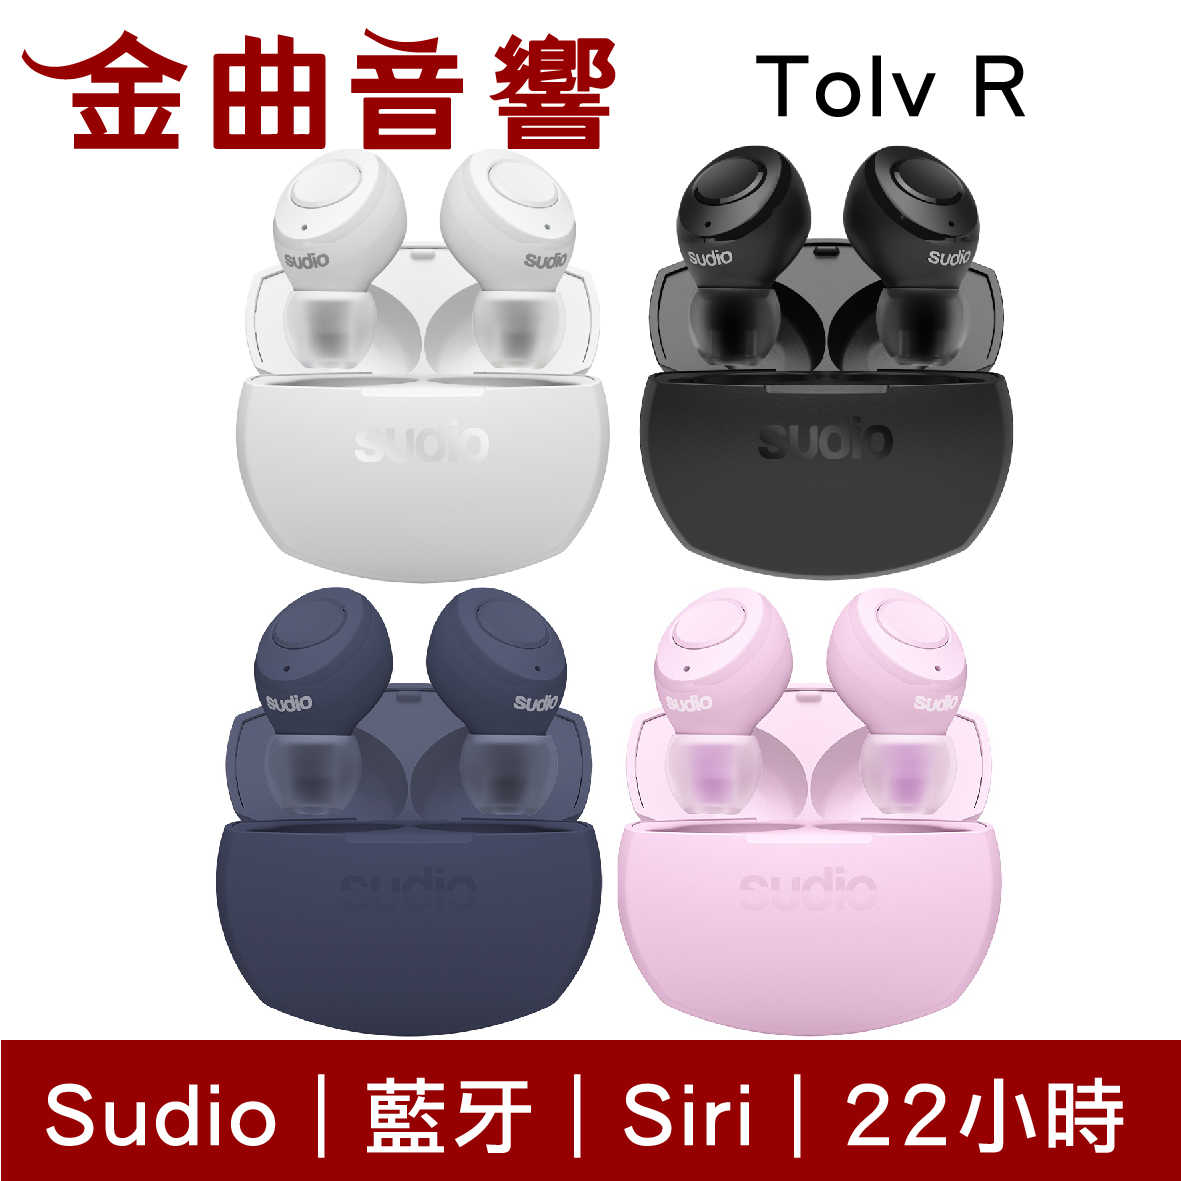 【現貨】Sudio Tolv R 粉色 真無線 藍芽耳機 可通話 語音助理 TolvR | 金曲音響